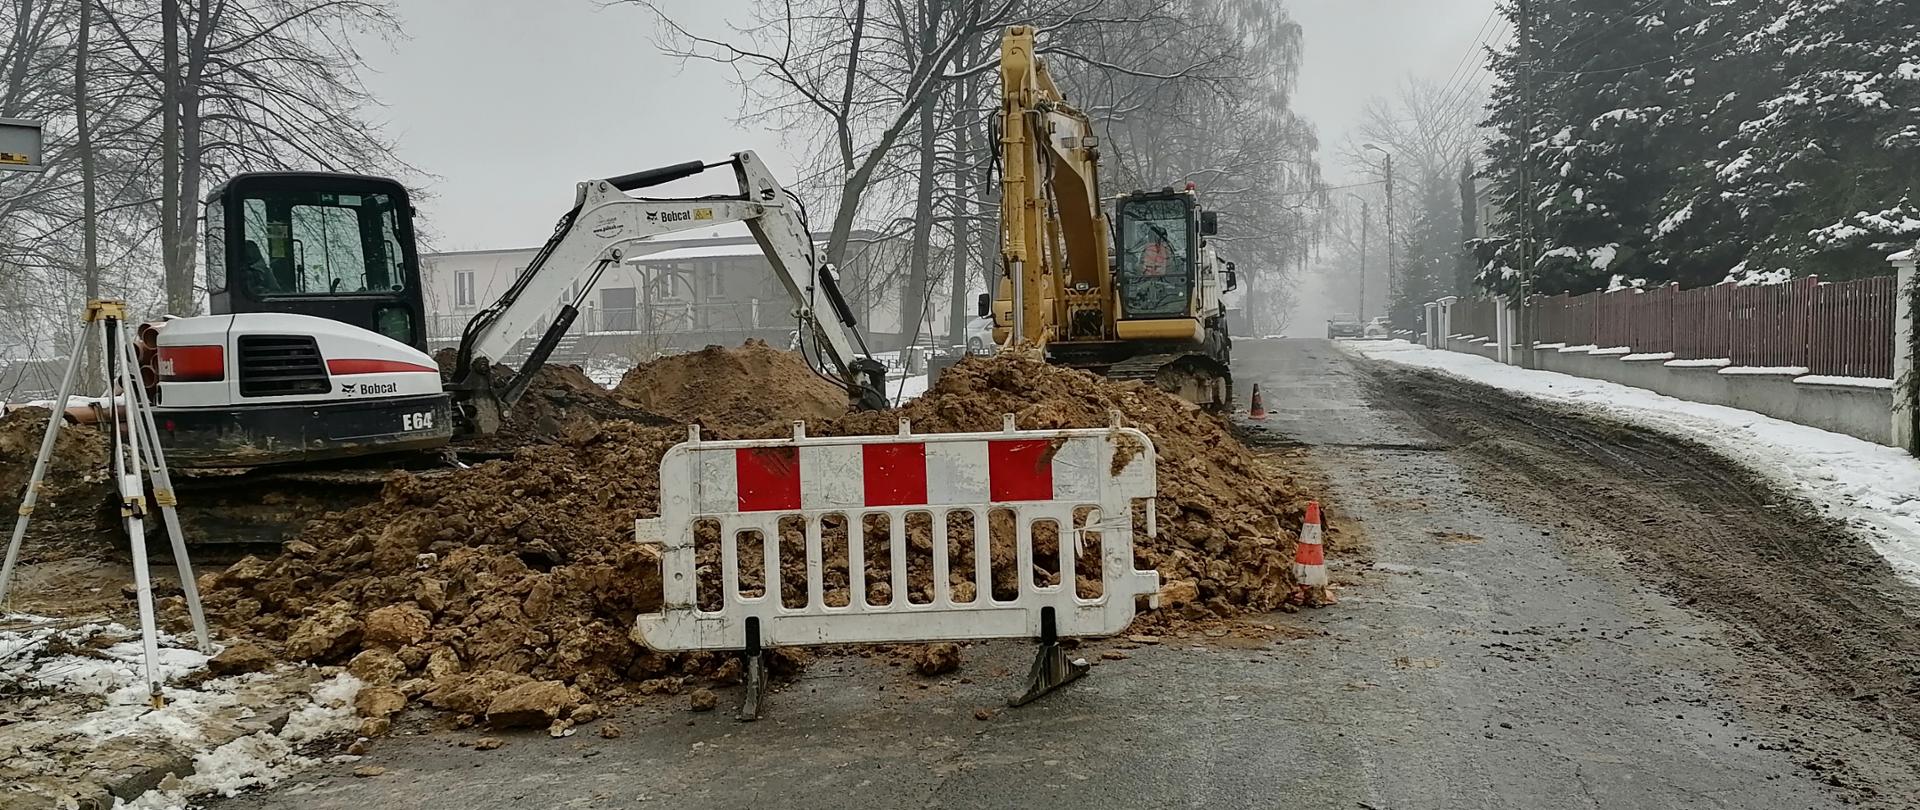 Budowa kanalizacji na południu Nakła Śląskiego - grudzień 2021